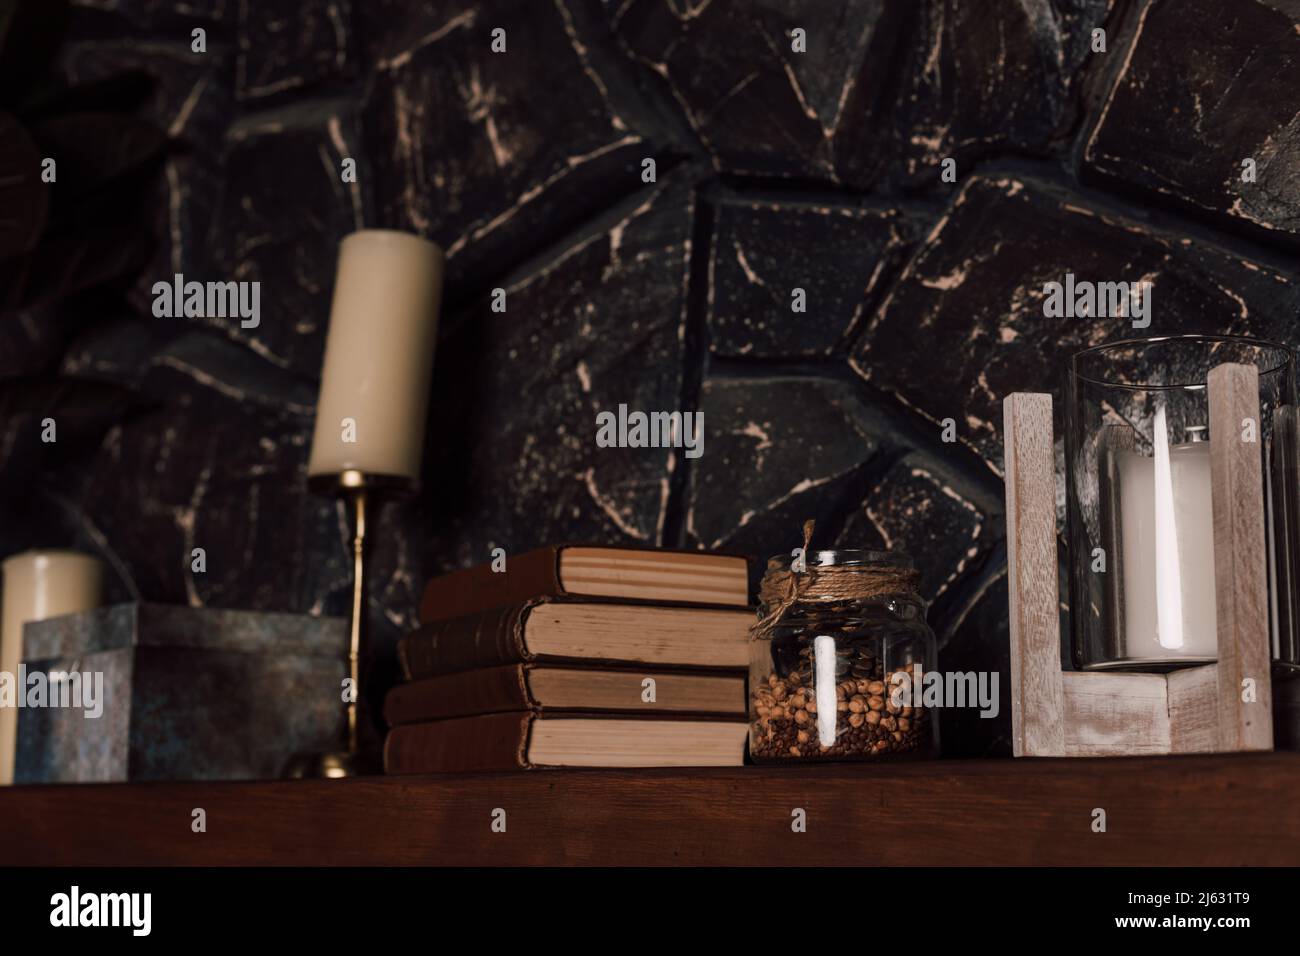 Ripiano in legno con libri, candele e altri articoli impilati Foto Stock